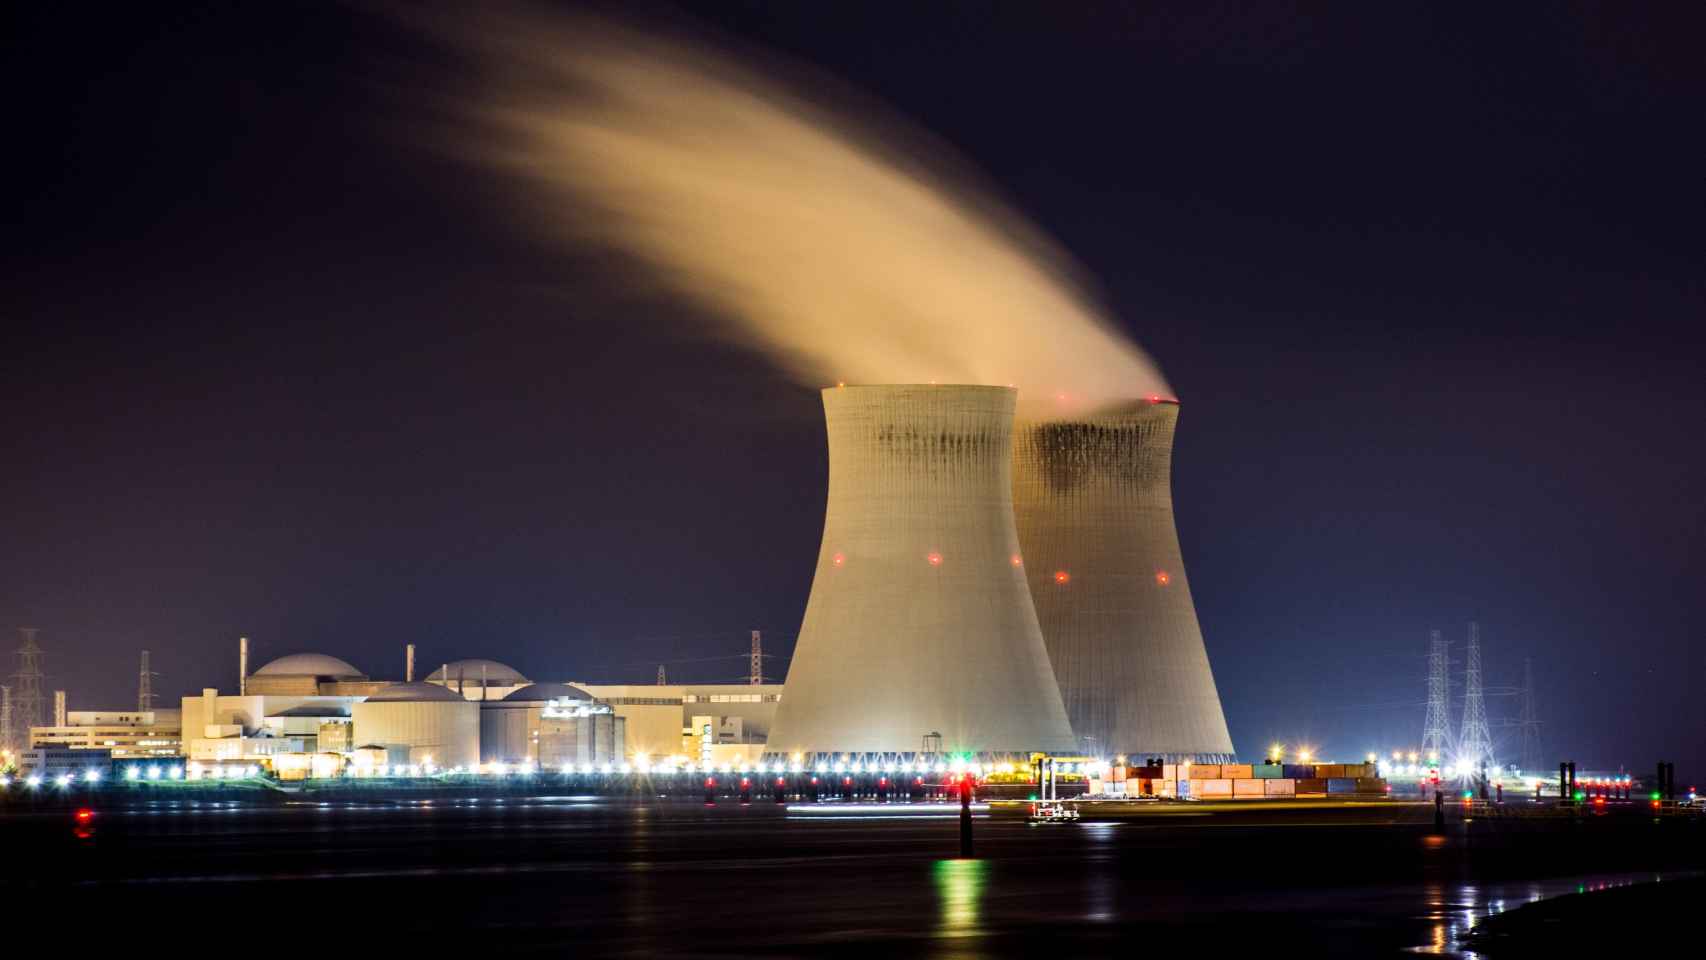 Torres refrigeración de central nuclear